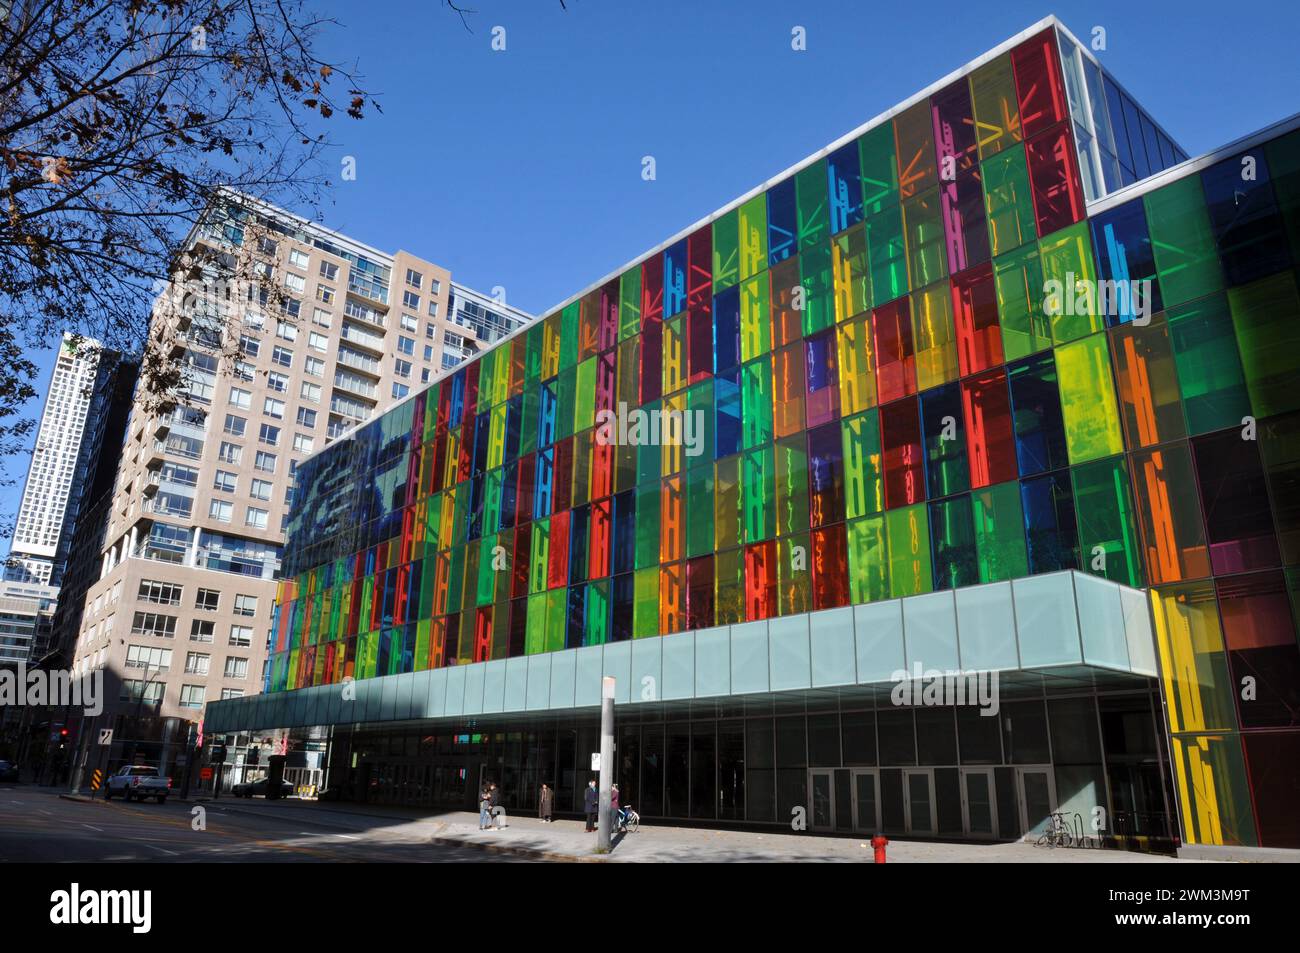 Farbenfrohe Glaspaneele erhellen die Fassade des Palais des congrès (Kongresszentrum) im Quartier International von Montreal. Stockfoto